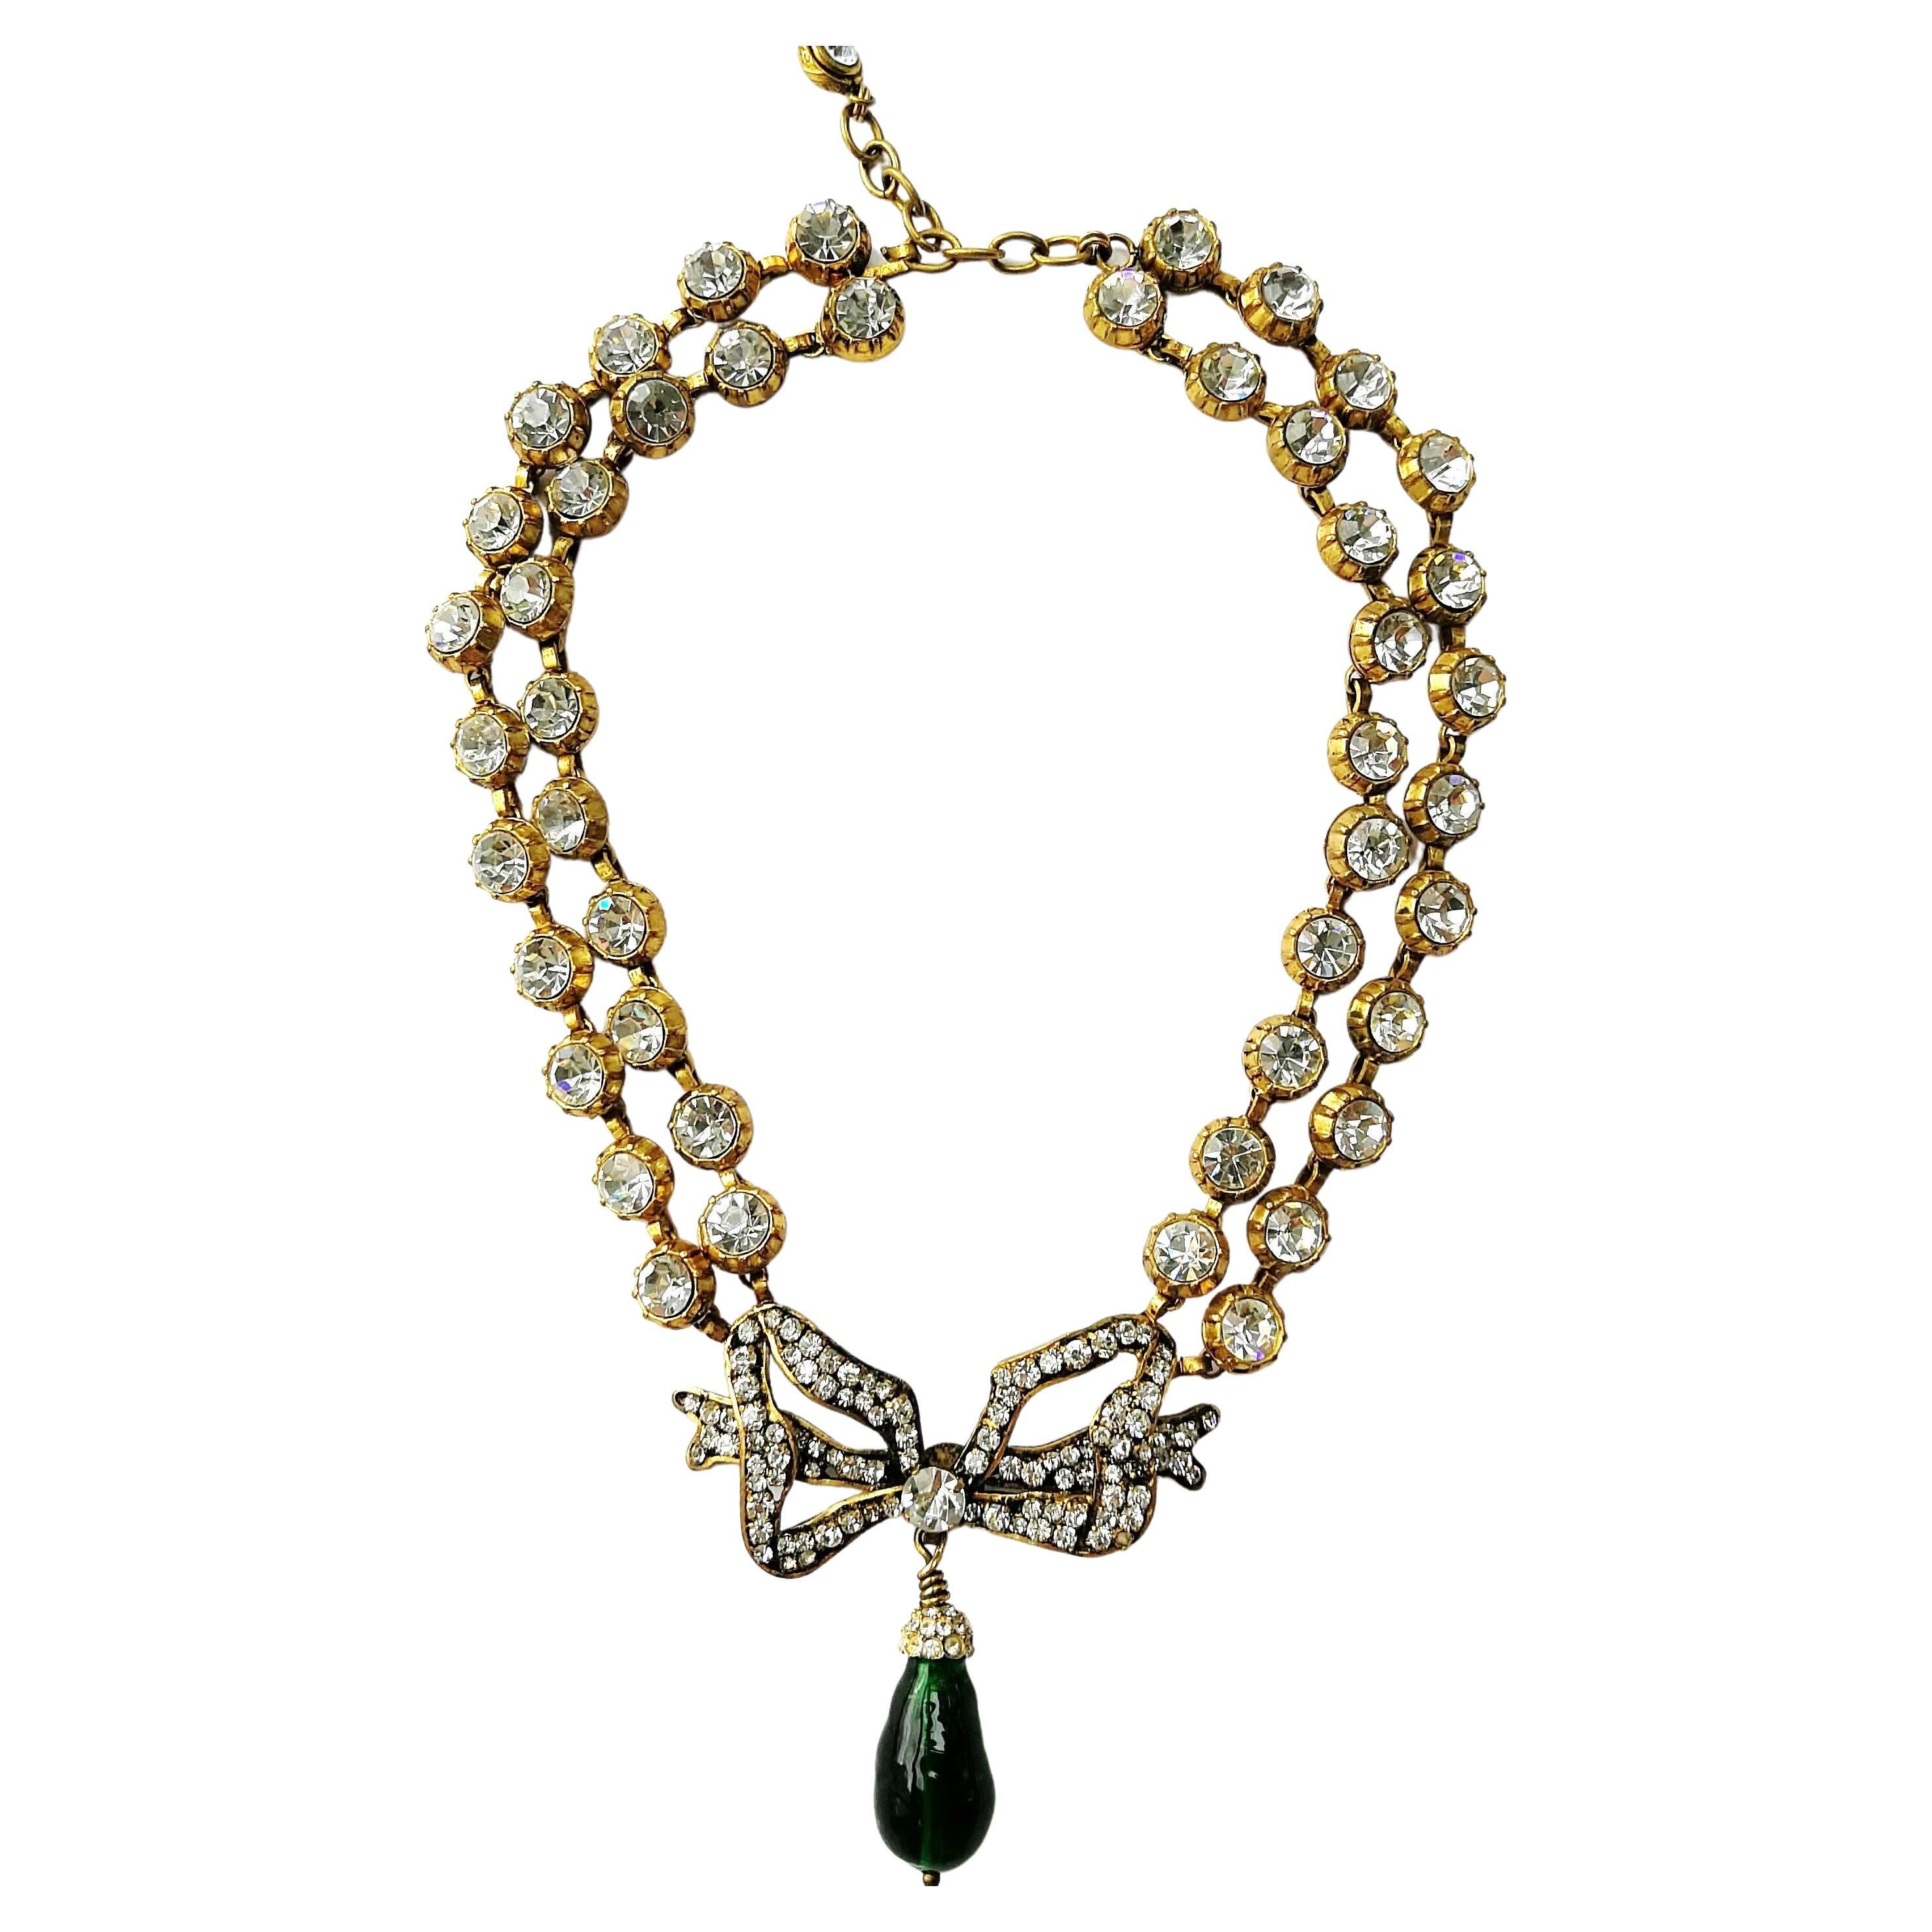 Maison Gripoix for Chanel Drop Necklaces